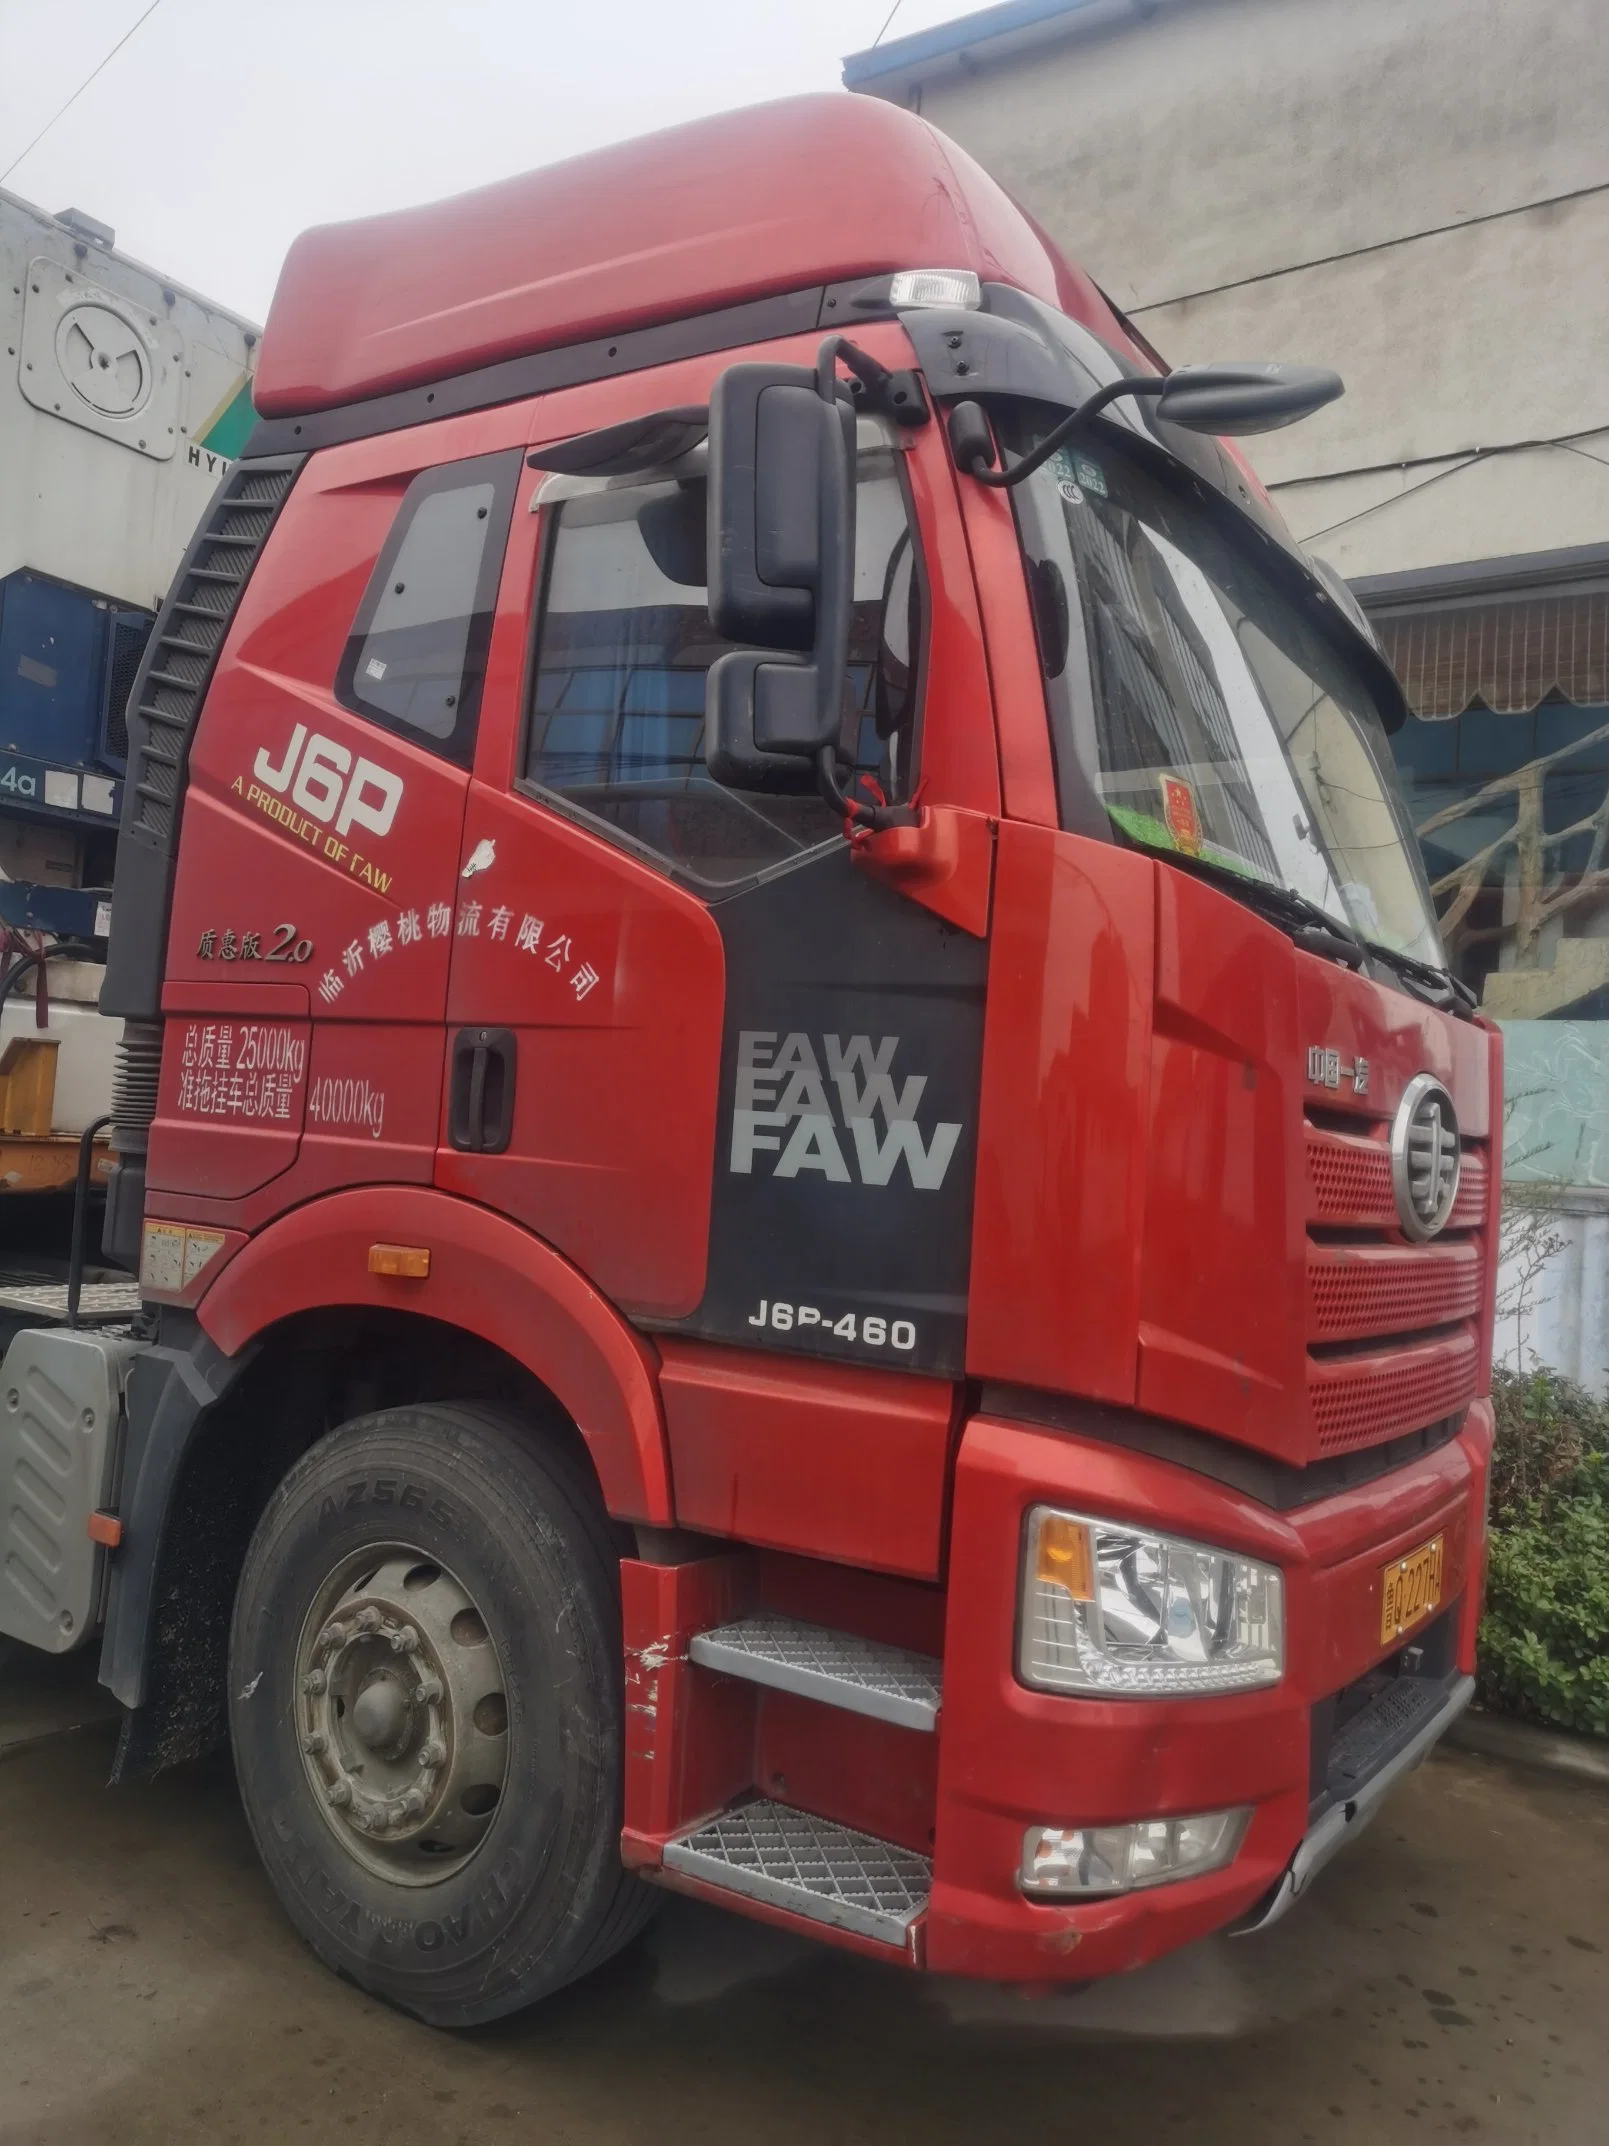 La marca china FAW, Transporte Pesado de Piedra de Arena J6p 420CV 460CV 6X4 usados cantera volquete articulado Jiefang Volquete camiones usados